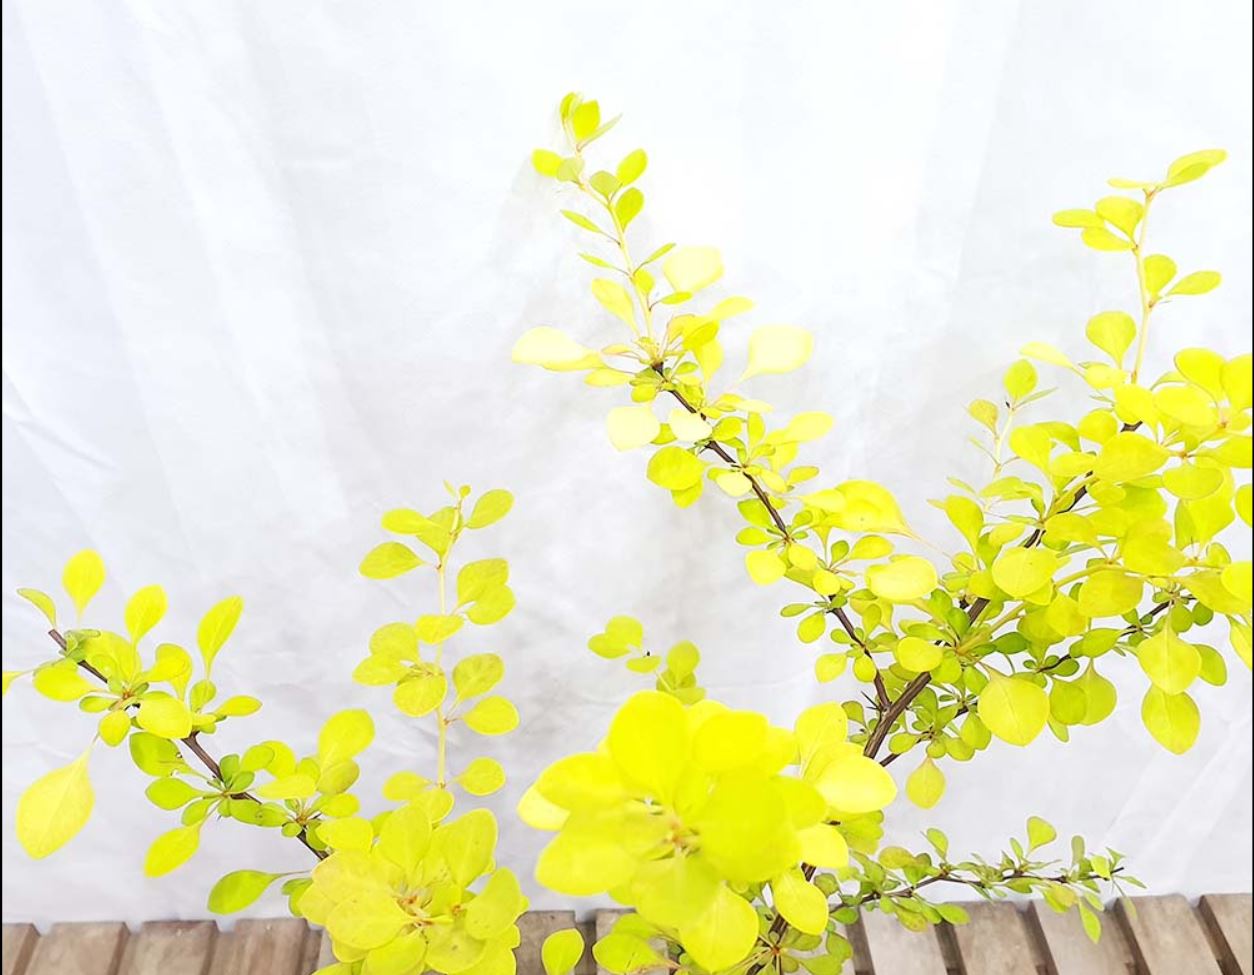 황금 매자 나무 미니 단풍 나무 묘목 꽃 열매 분재 화분 조경수 정원수